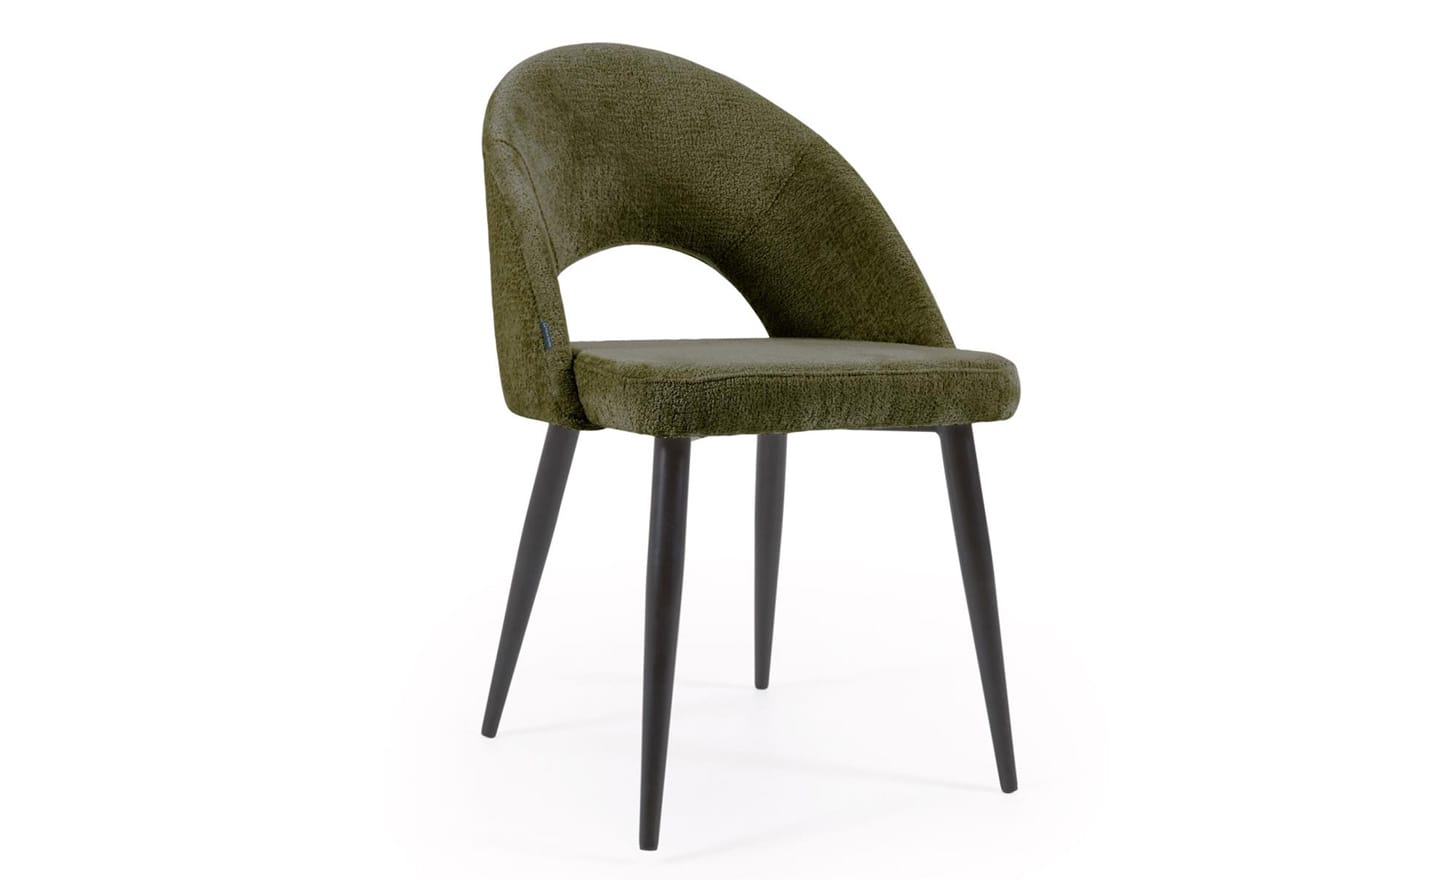 Cadeira Mael Chenille Verde, estofada com tecido chenille aveludado na cor verde. Pernas de metal preto para um design moderno e elegante.